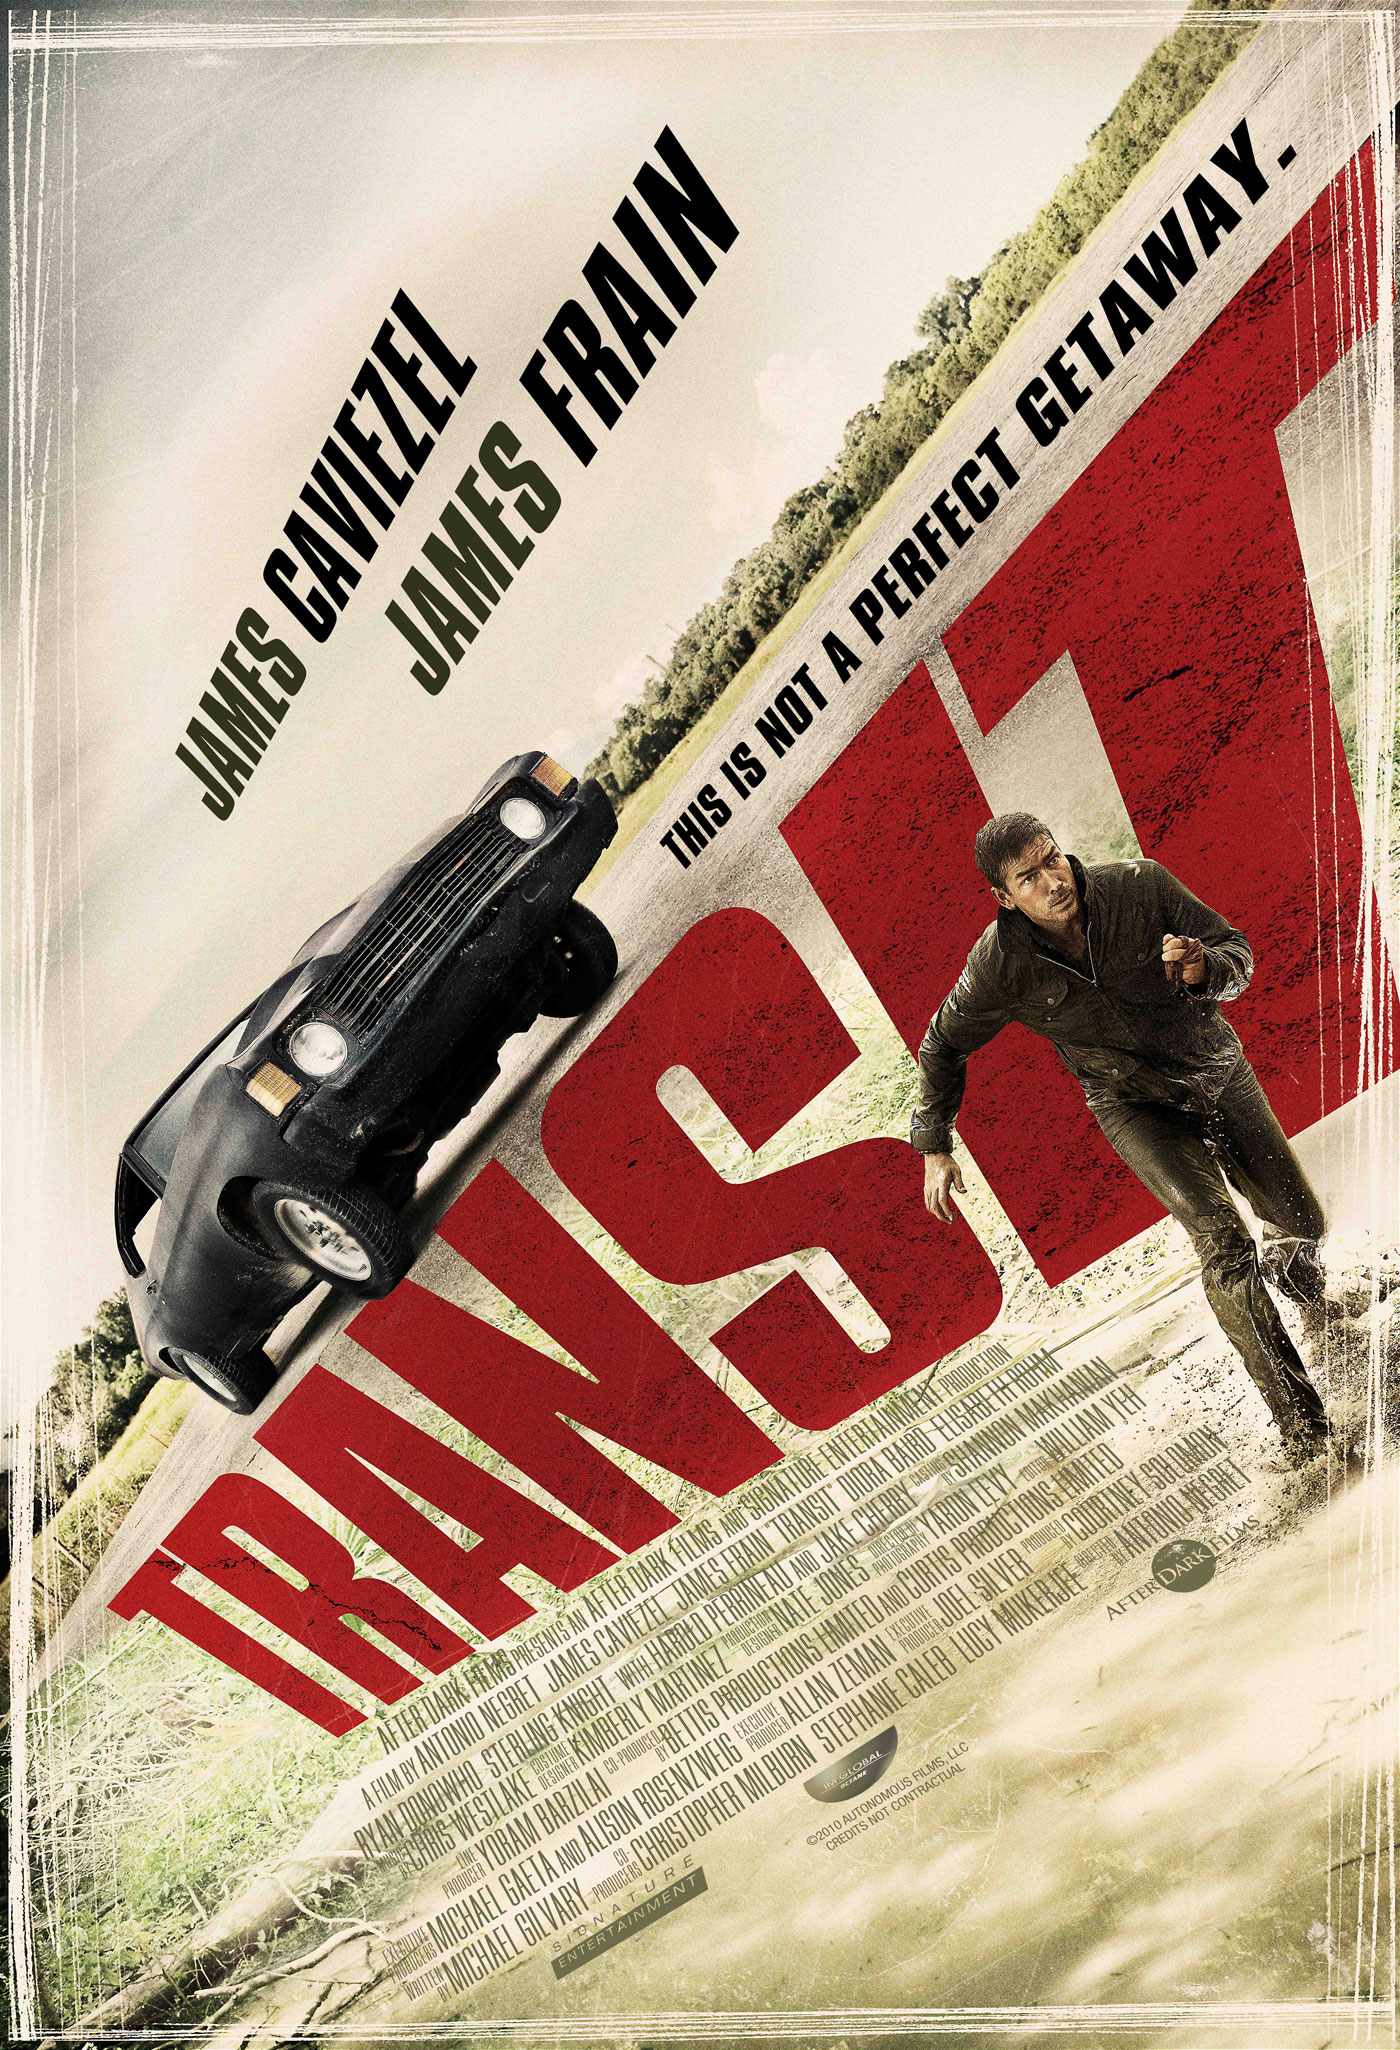 Transit (2012) หนีนรกทริประห่ำล่า